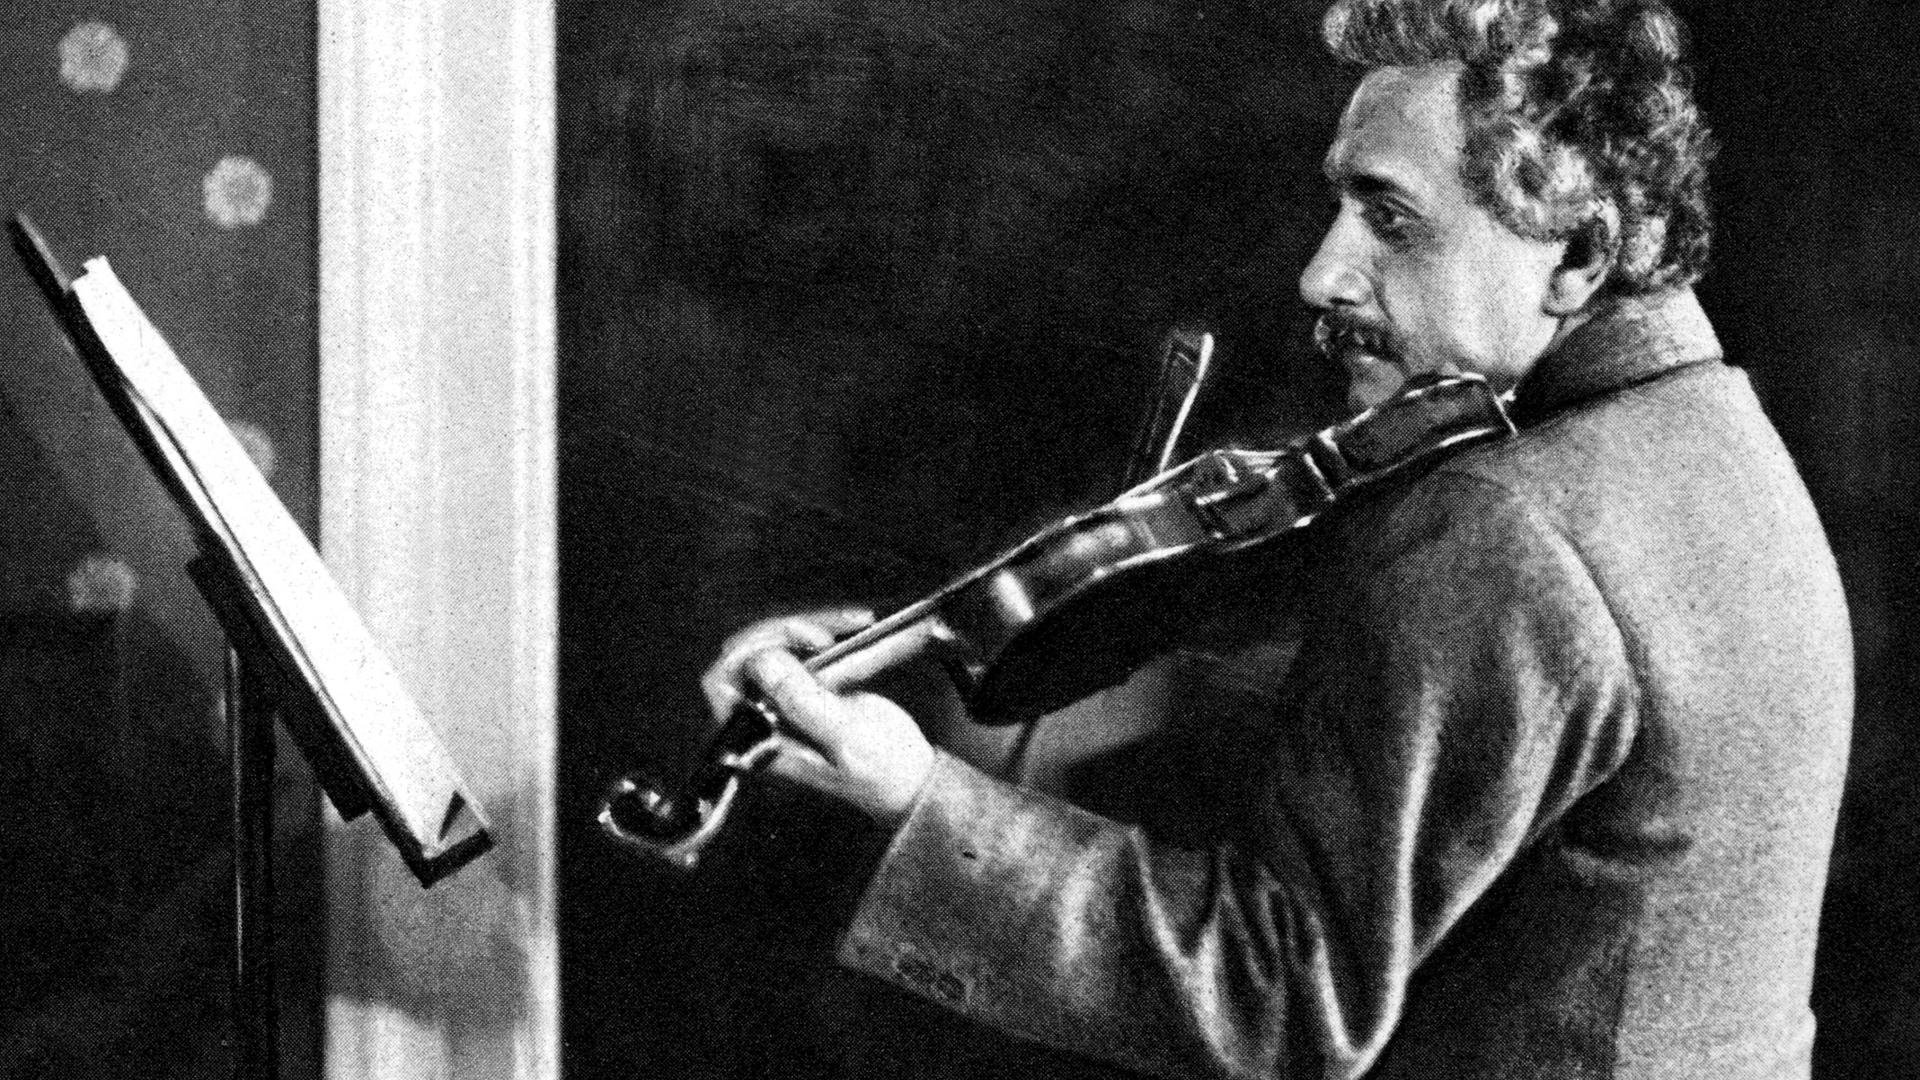 Eine schwarz-weiße Fotografie zeigt den Physiker Albert Einstein vor einem Notenpult Geige spielend.